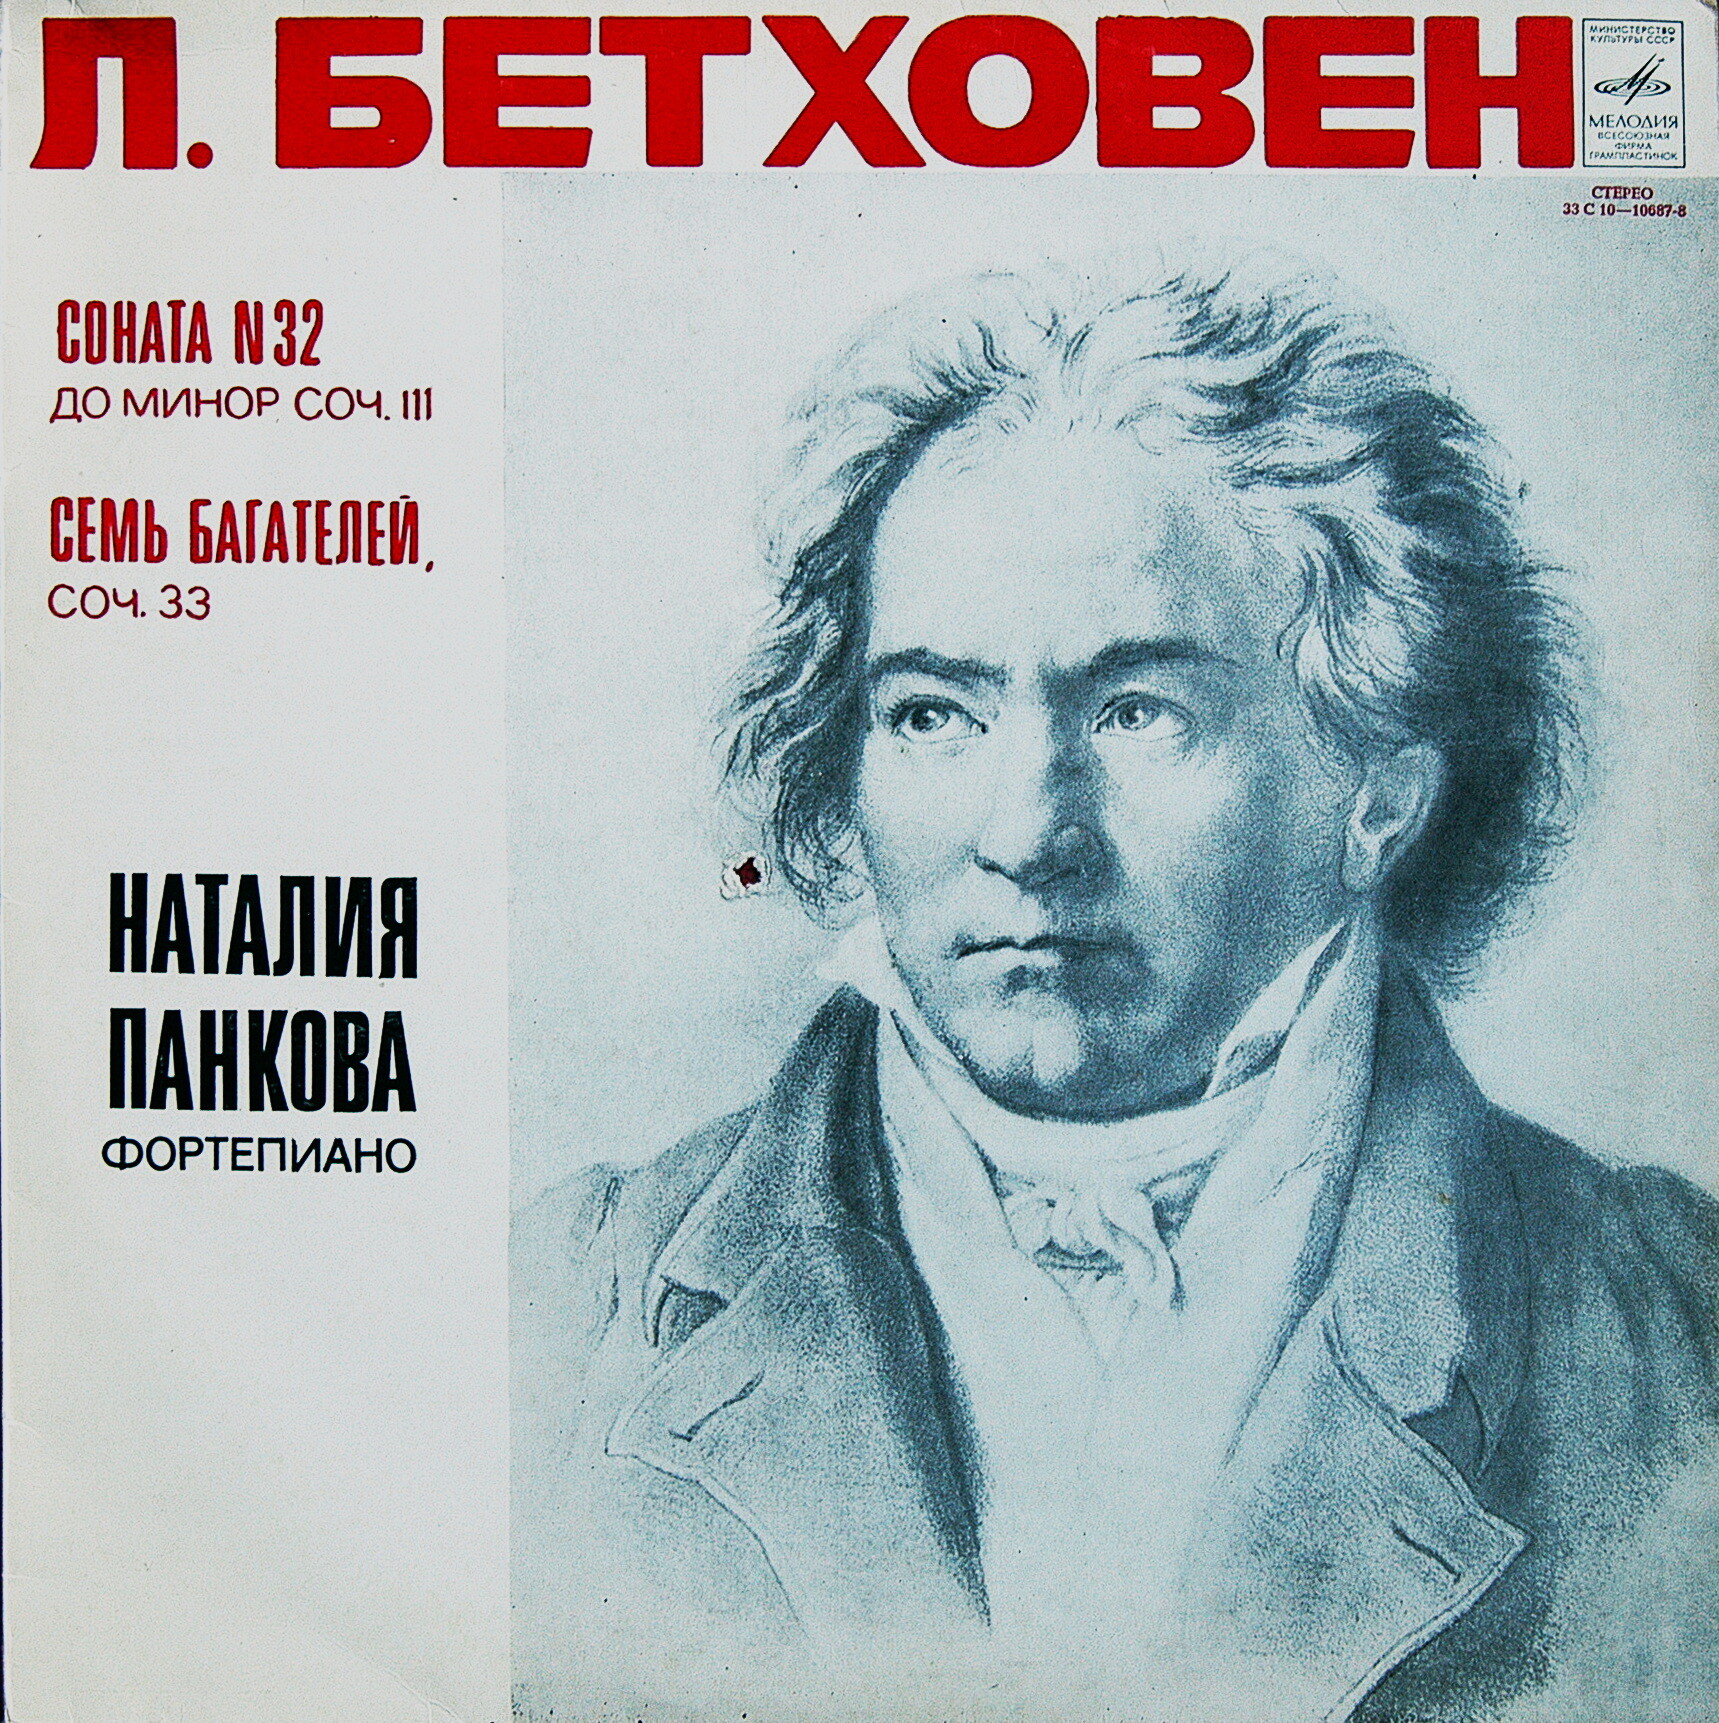 ПАНКОВА Наталия (фортепиано). Л.Бетховен